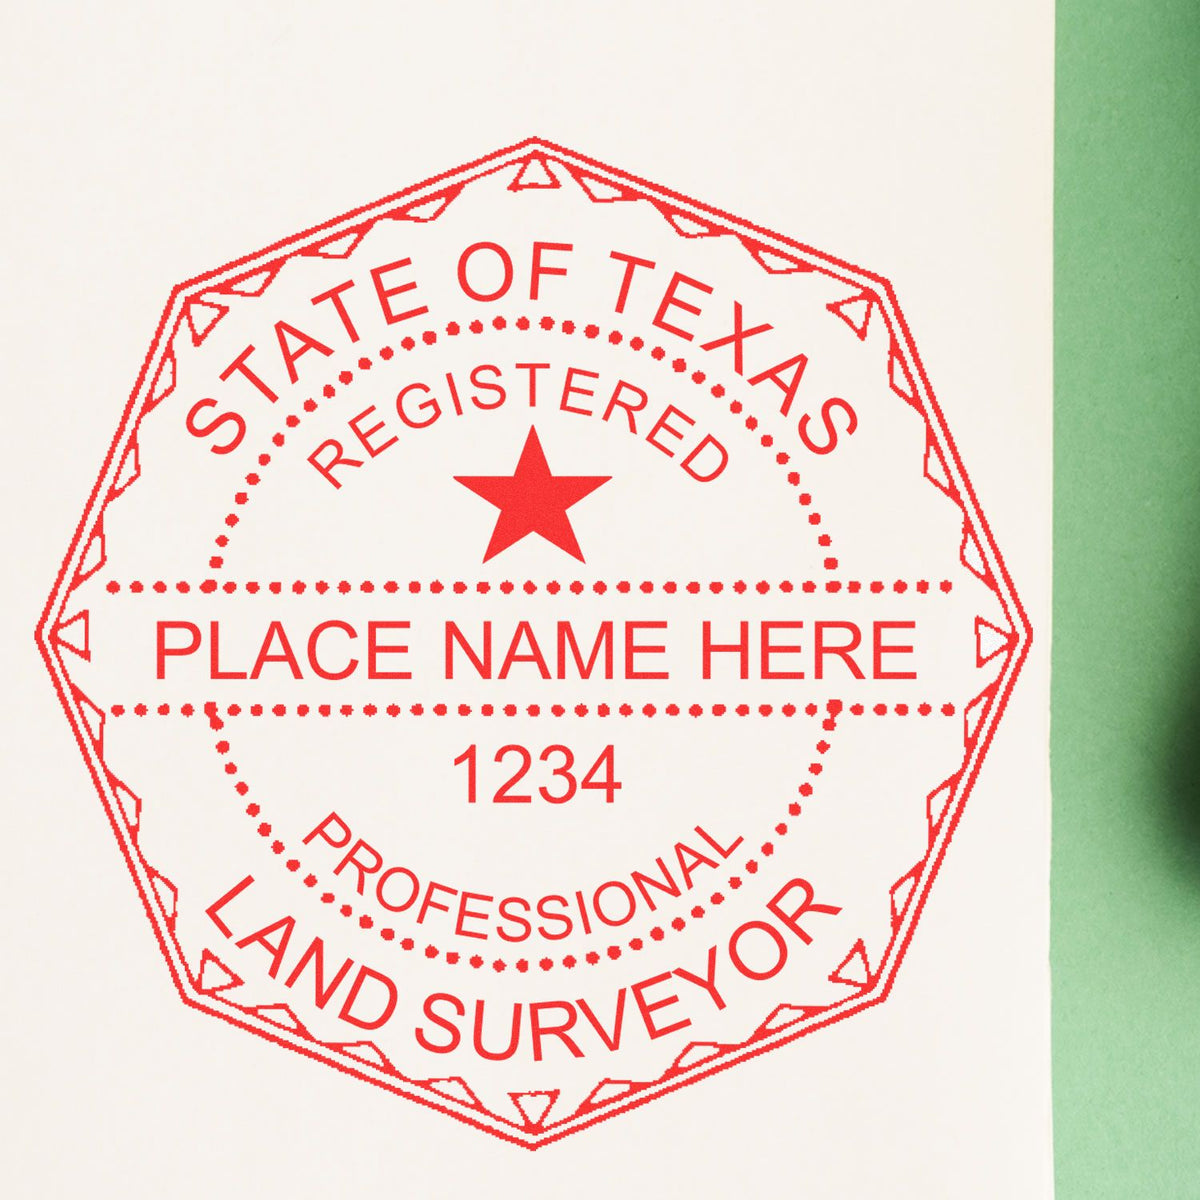 Texas Land Surveyor Seal Stamp In Use Photo